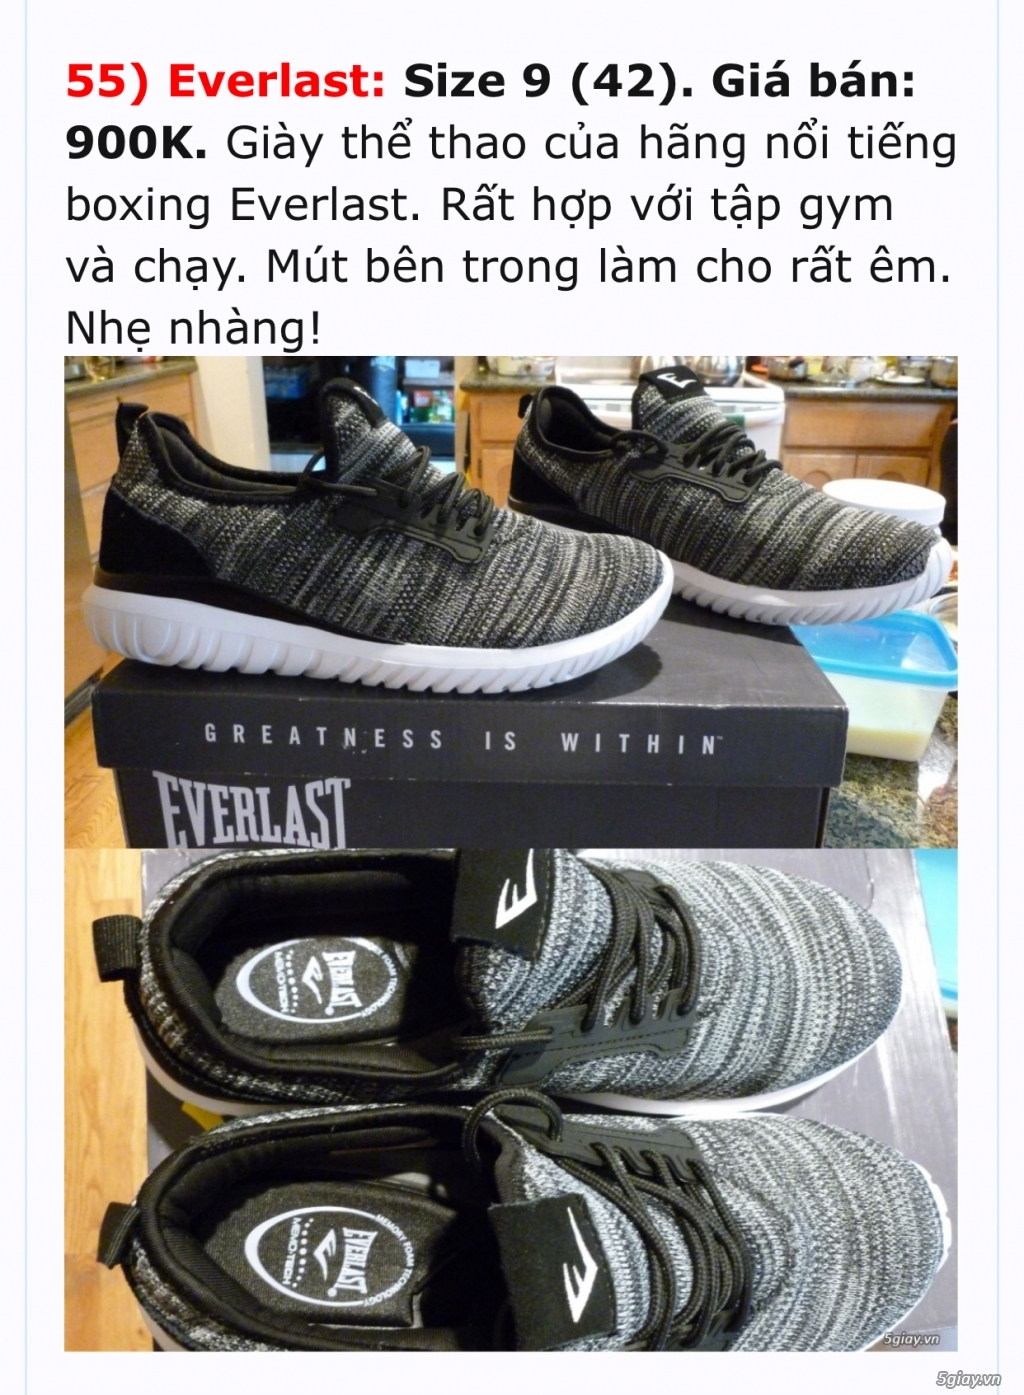 Mình xách/gửi giày Nike, Skechers, Reebok, Polo, Converse, v.v. từ Mỹ.